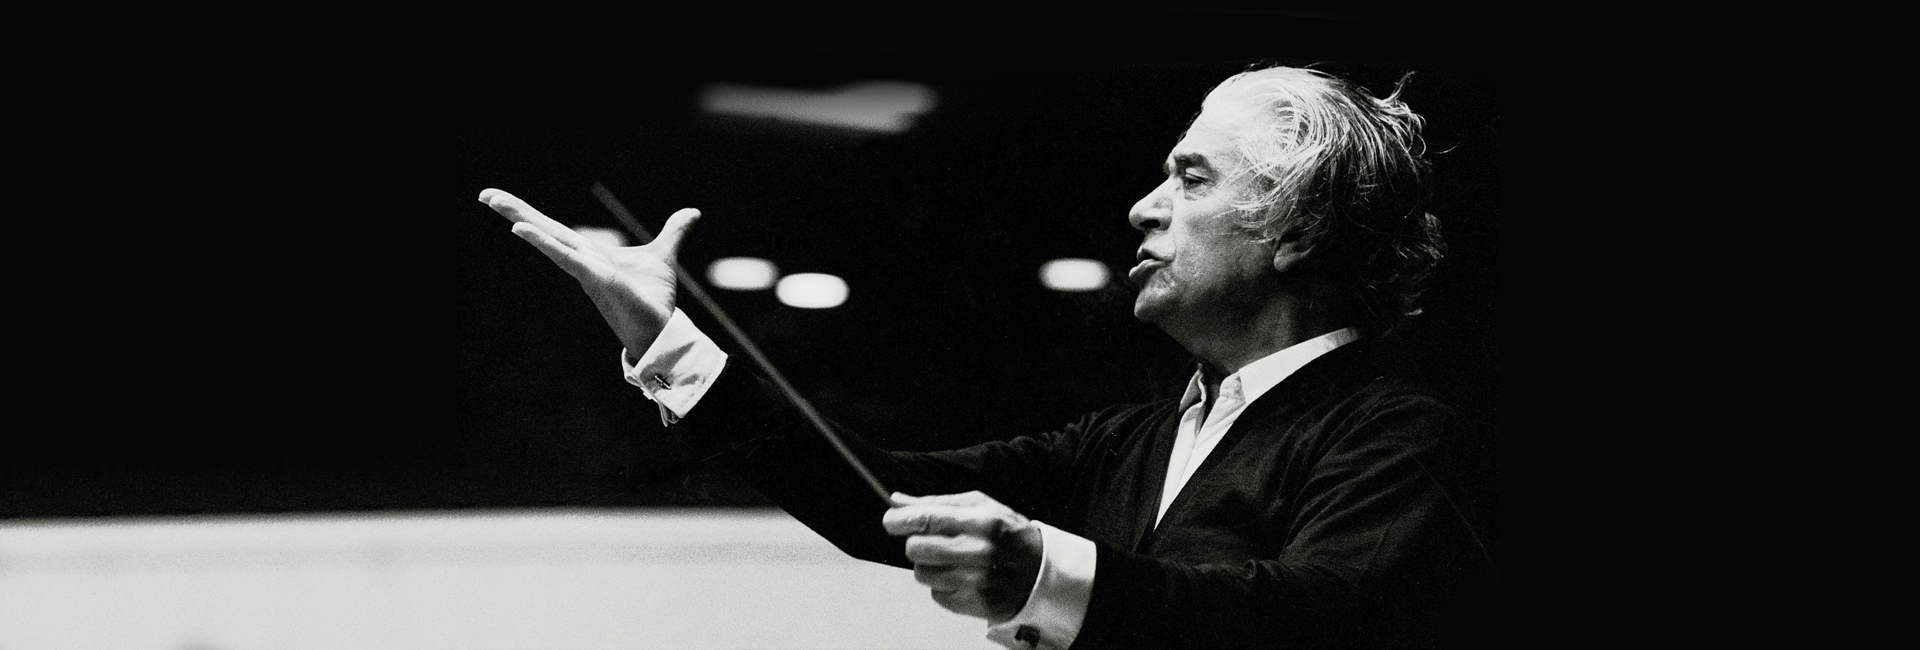 Românul Sergiu Celibidache este considerat unul dintre cei mai mari dirijori ai secolului XX